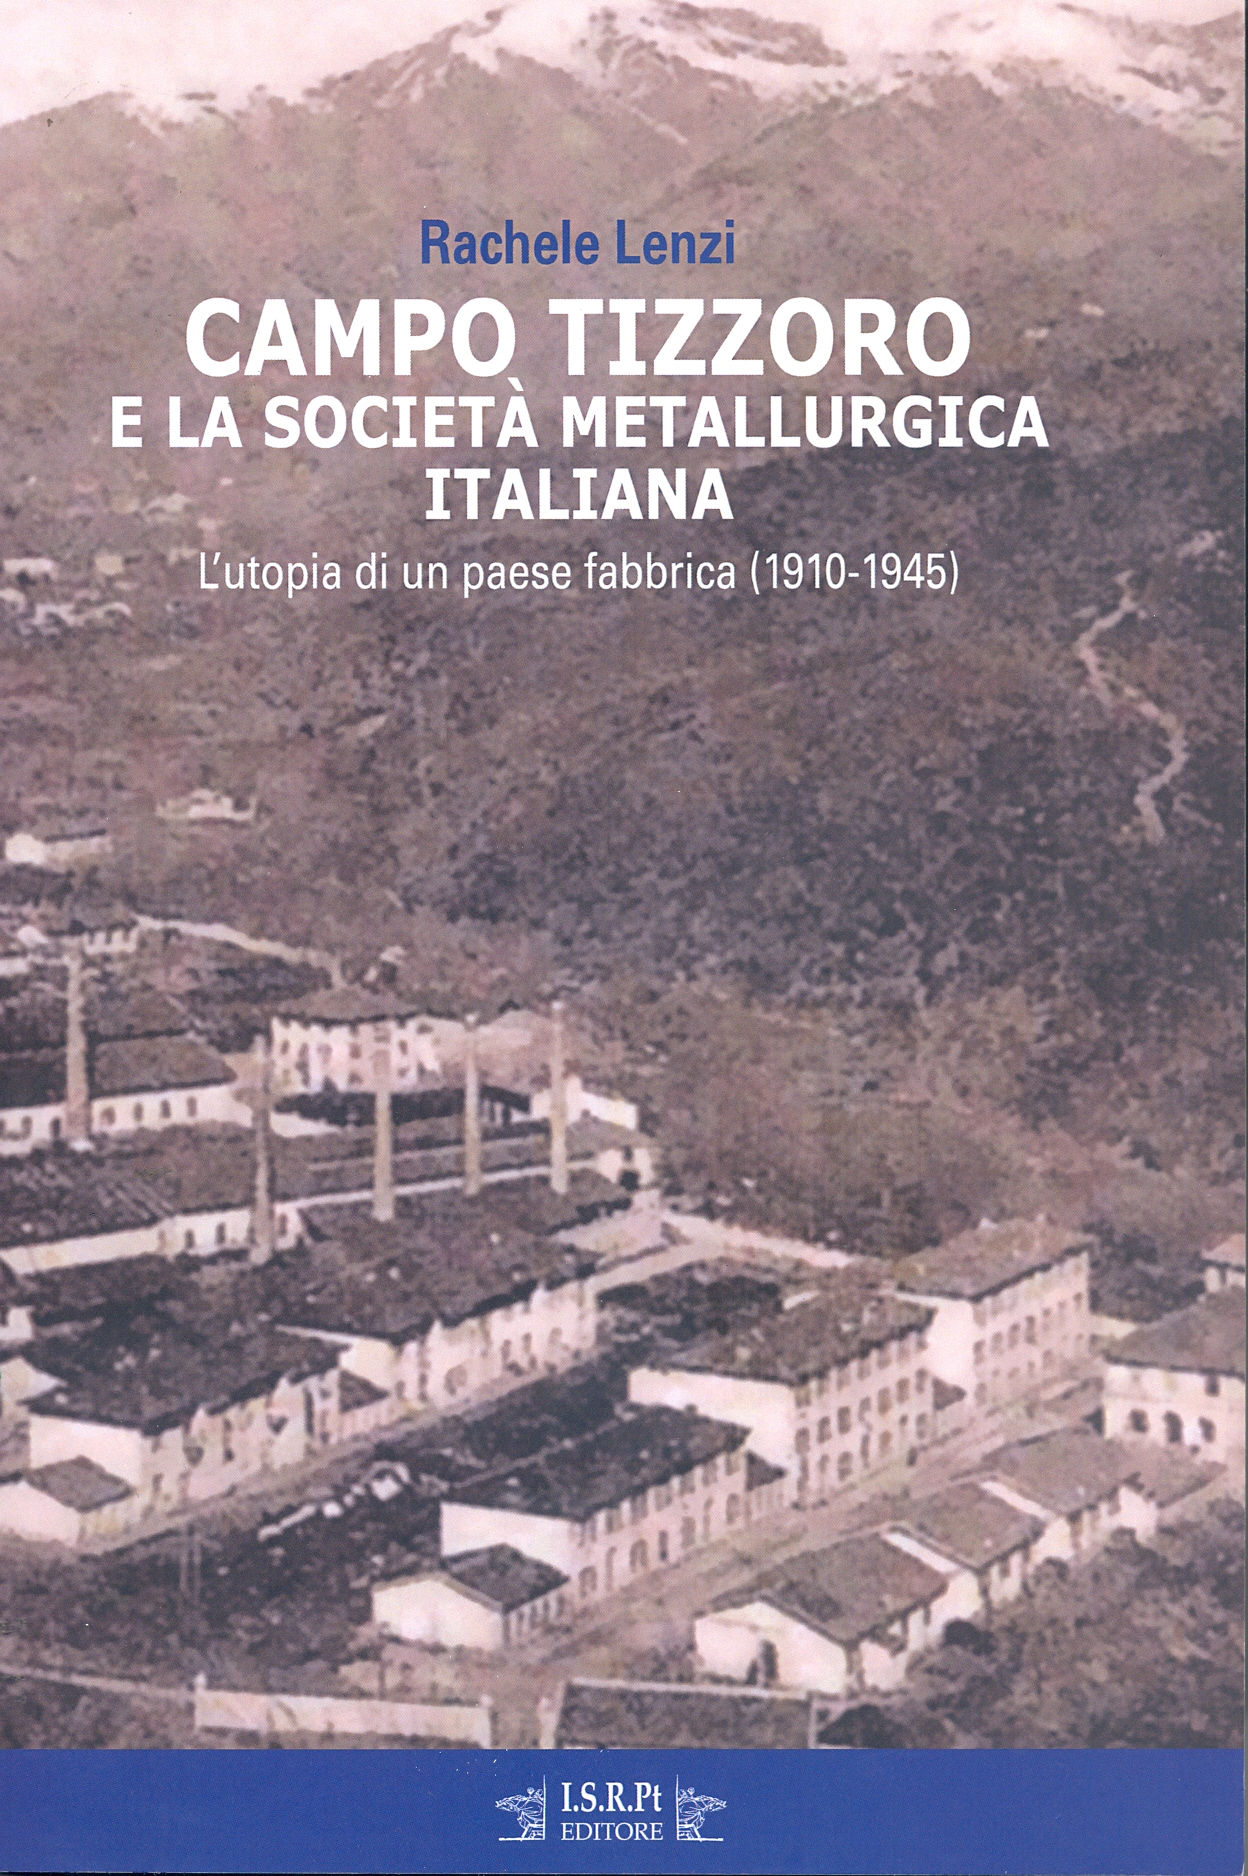 La copertina del libro Campo Tizzoro (immagina da comunicato stampa)